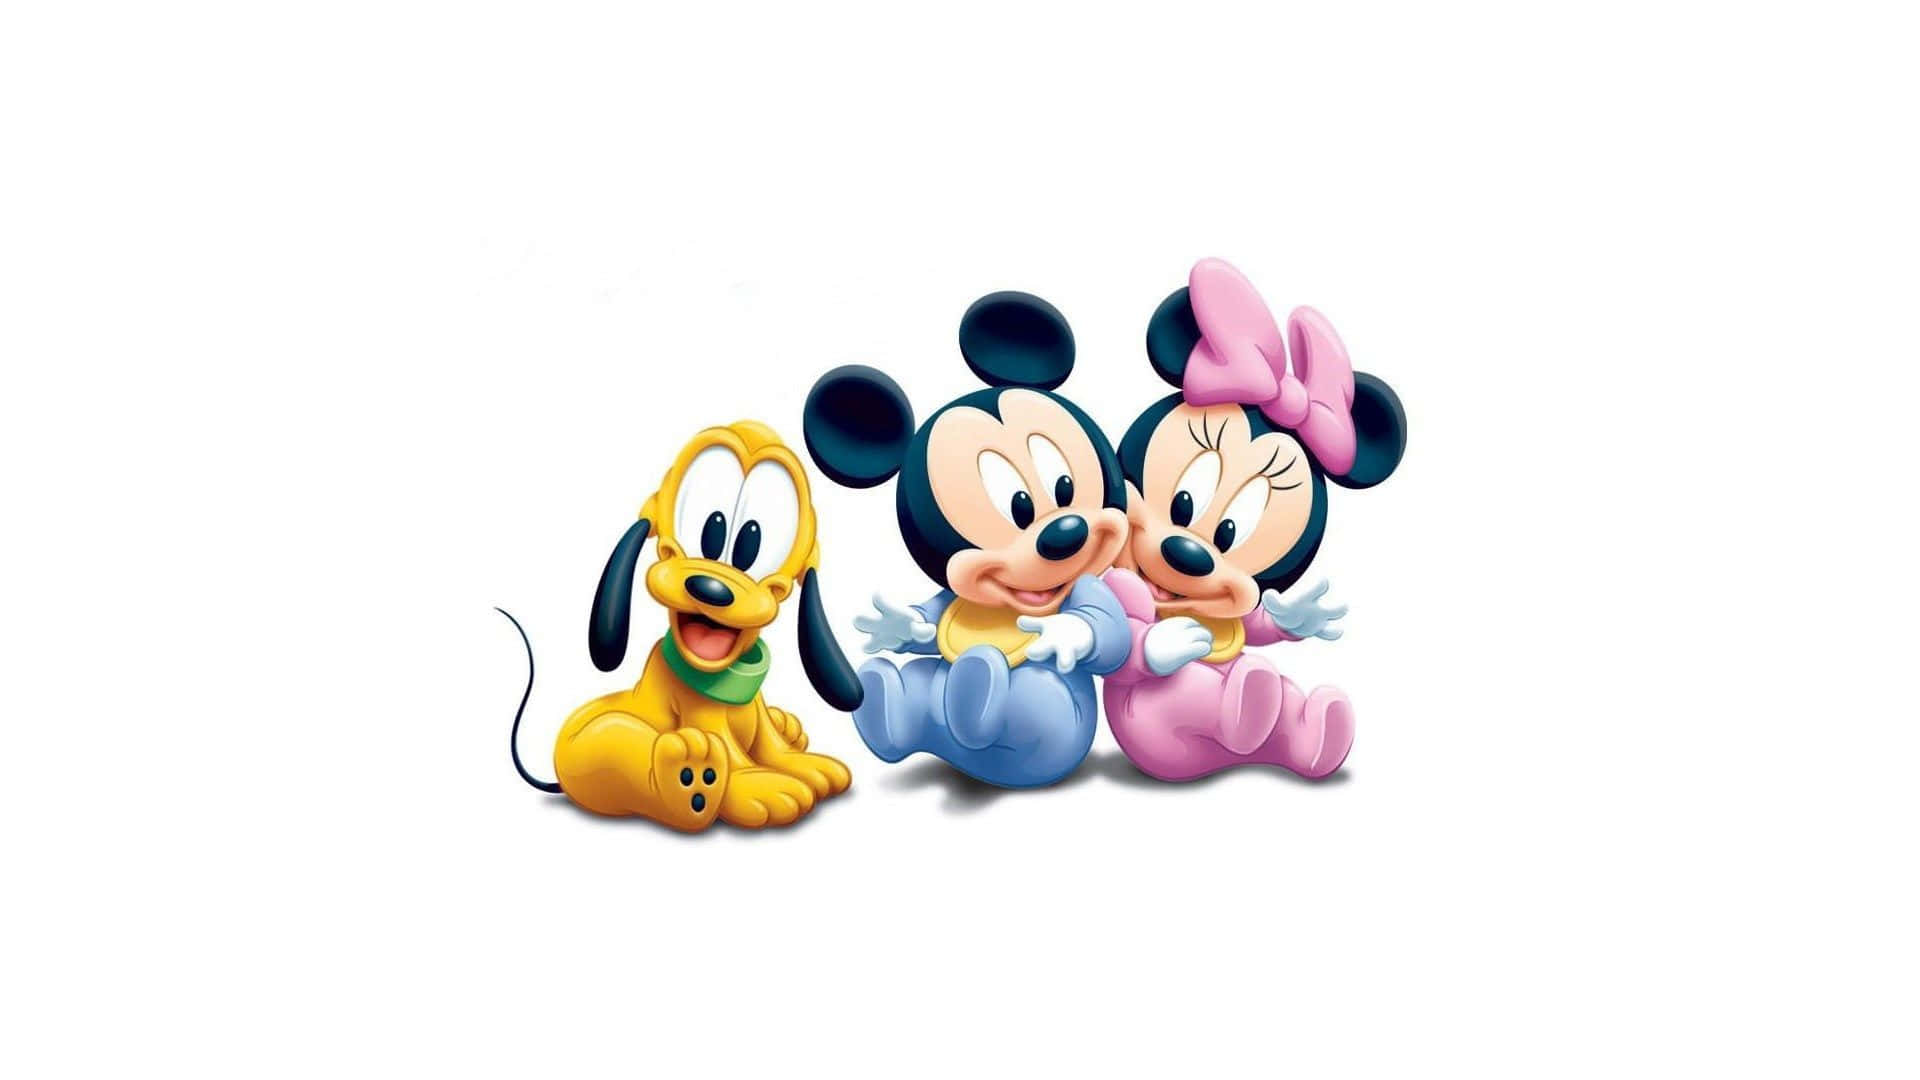 Ilduo Amato Di Disney, Topolino E Minnie Mouse!